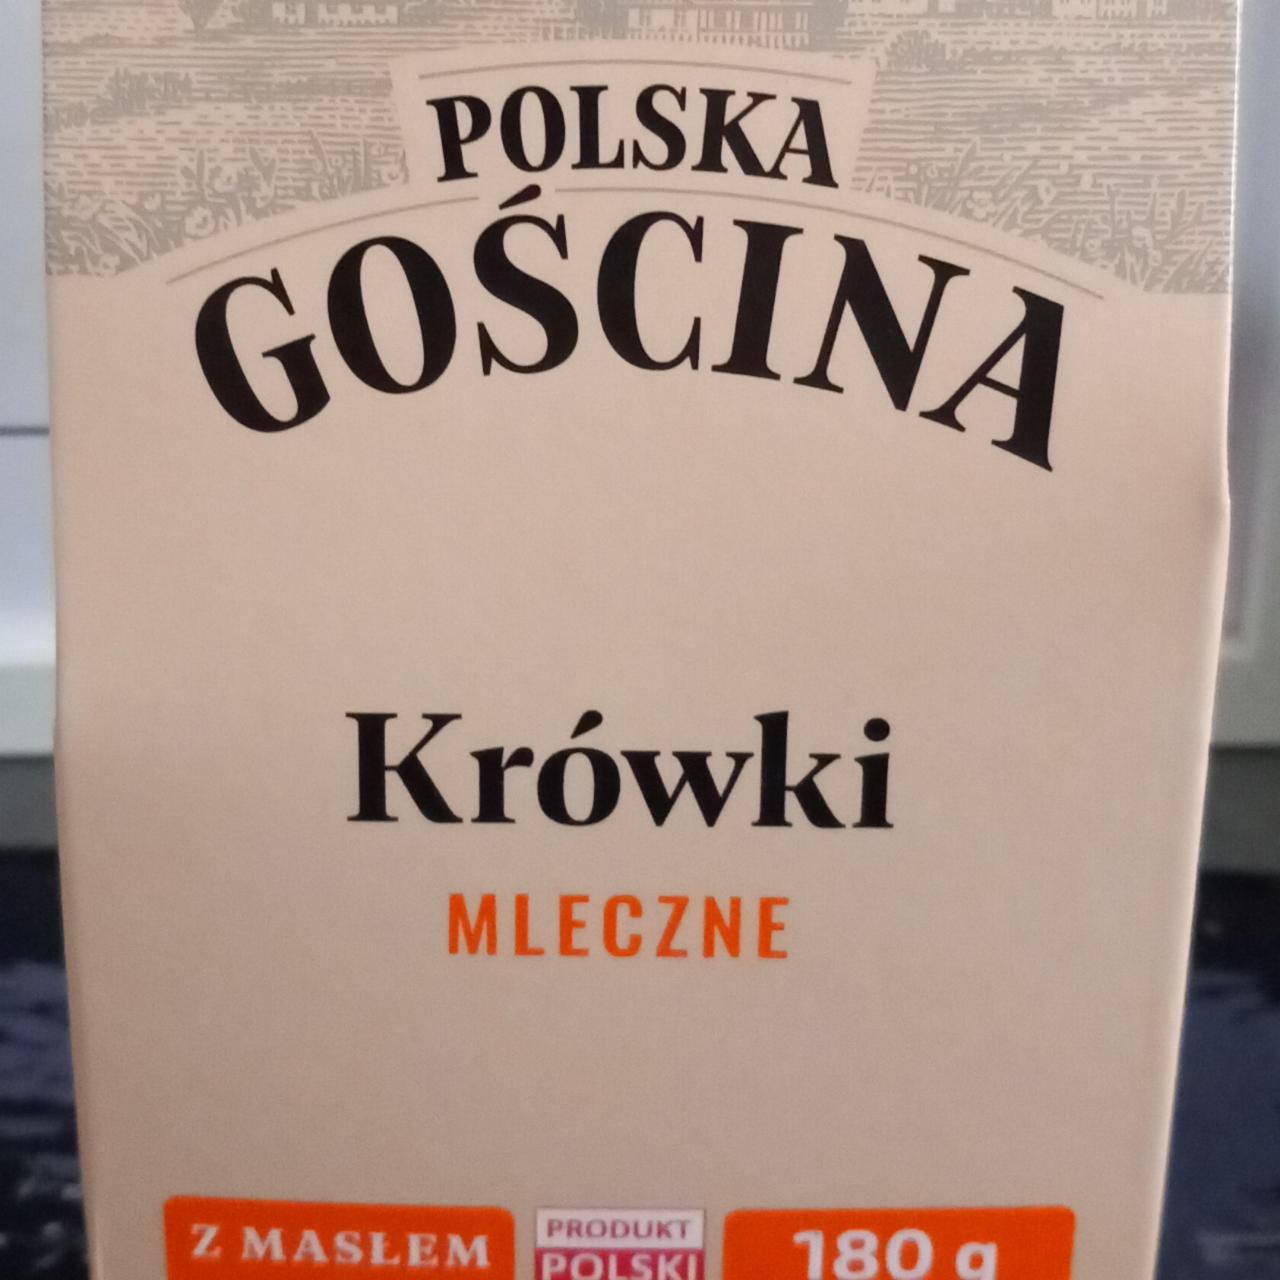 Fotografie - Krówki mleczne z maslem Polska gościna